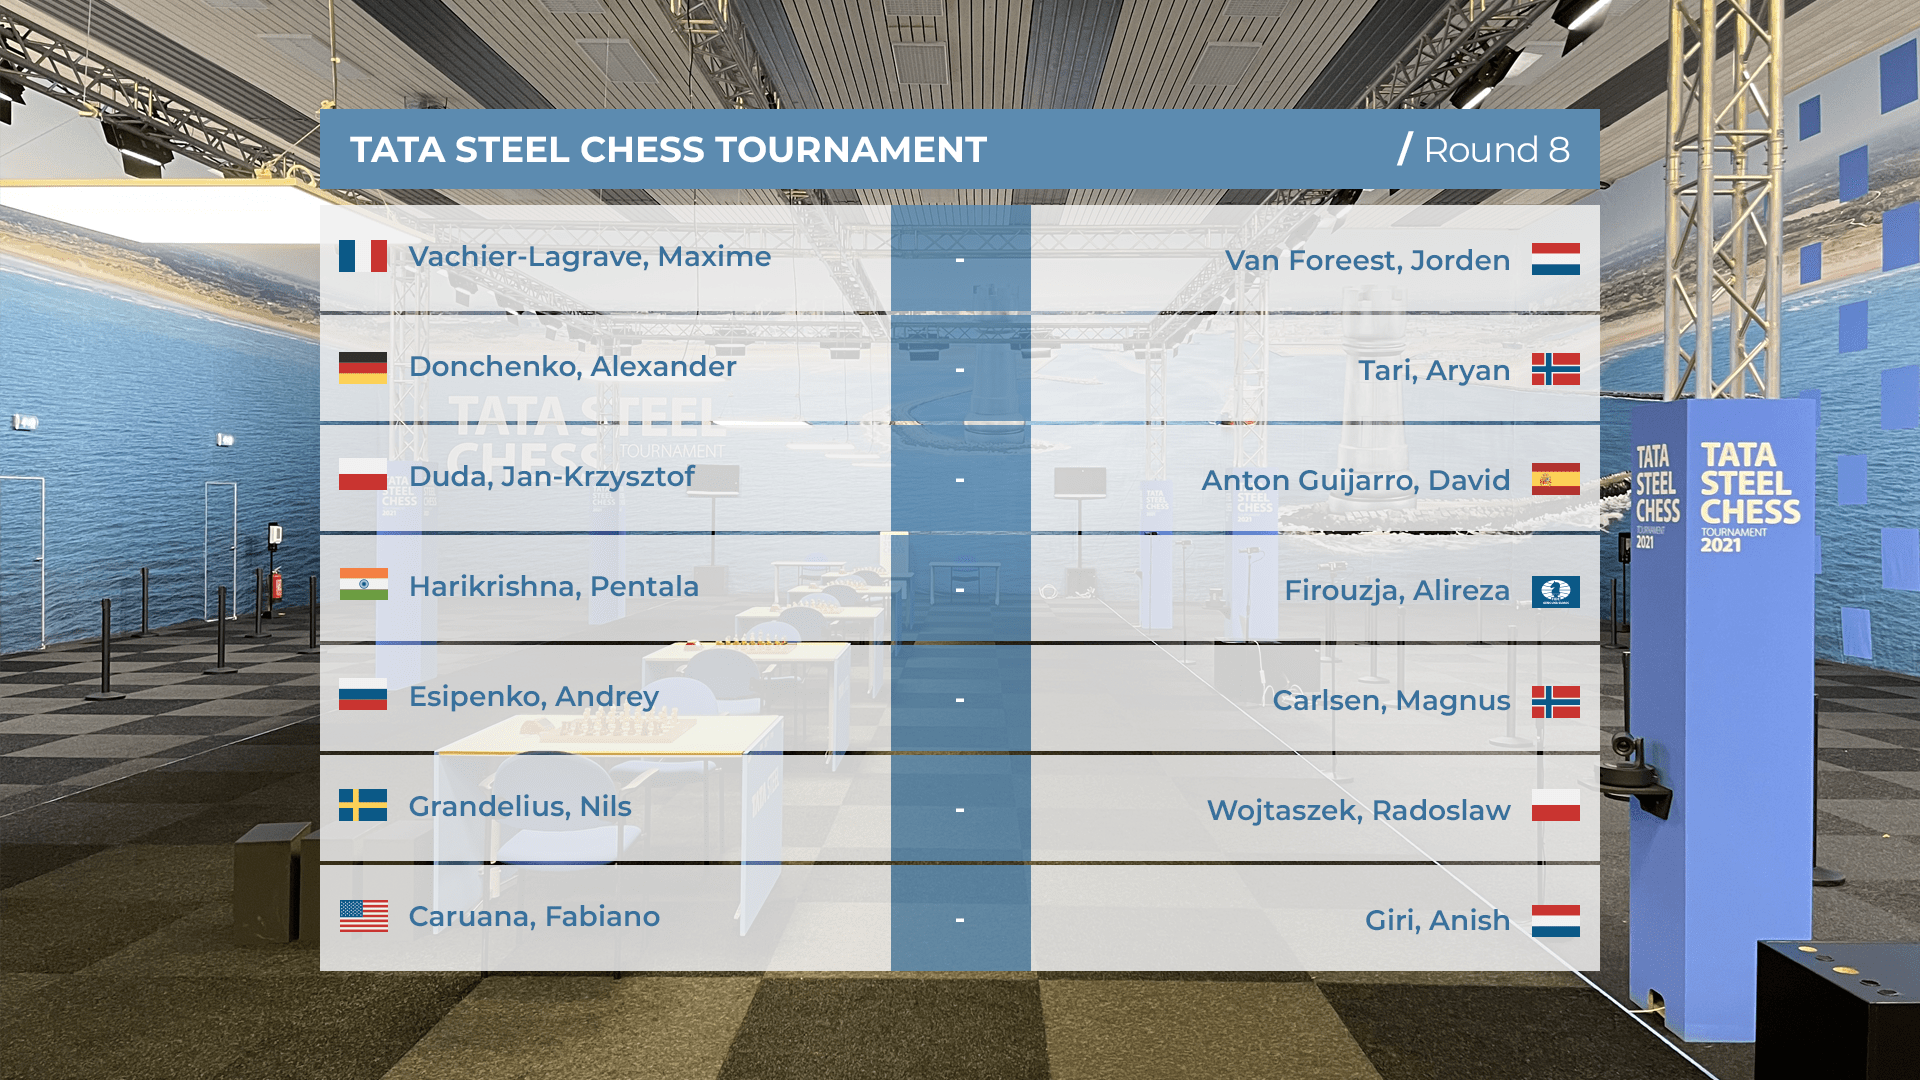 Tata Steel Chess 2021 round 8 pairings